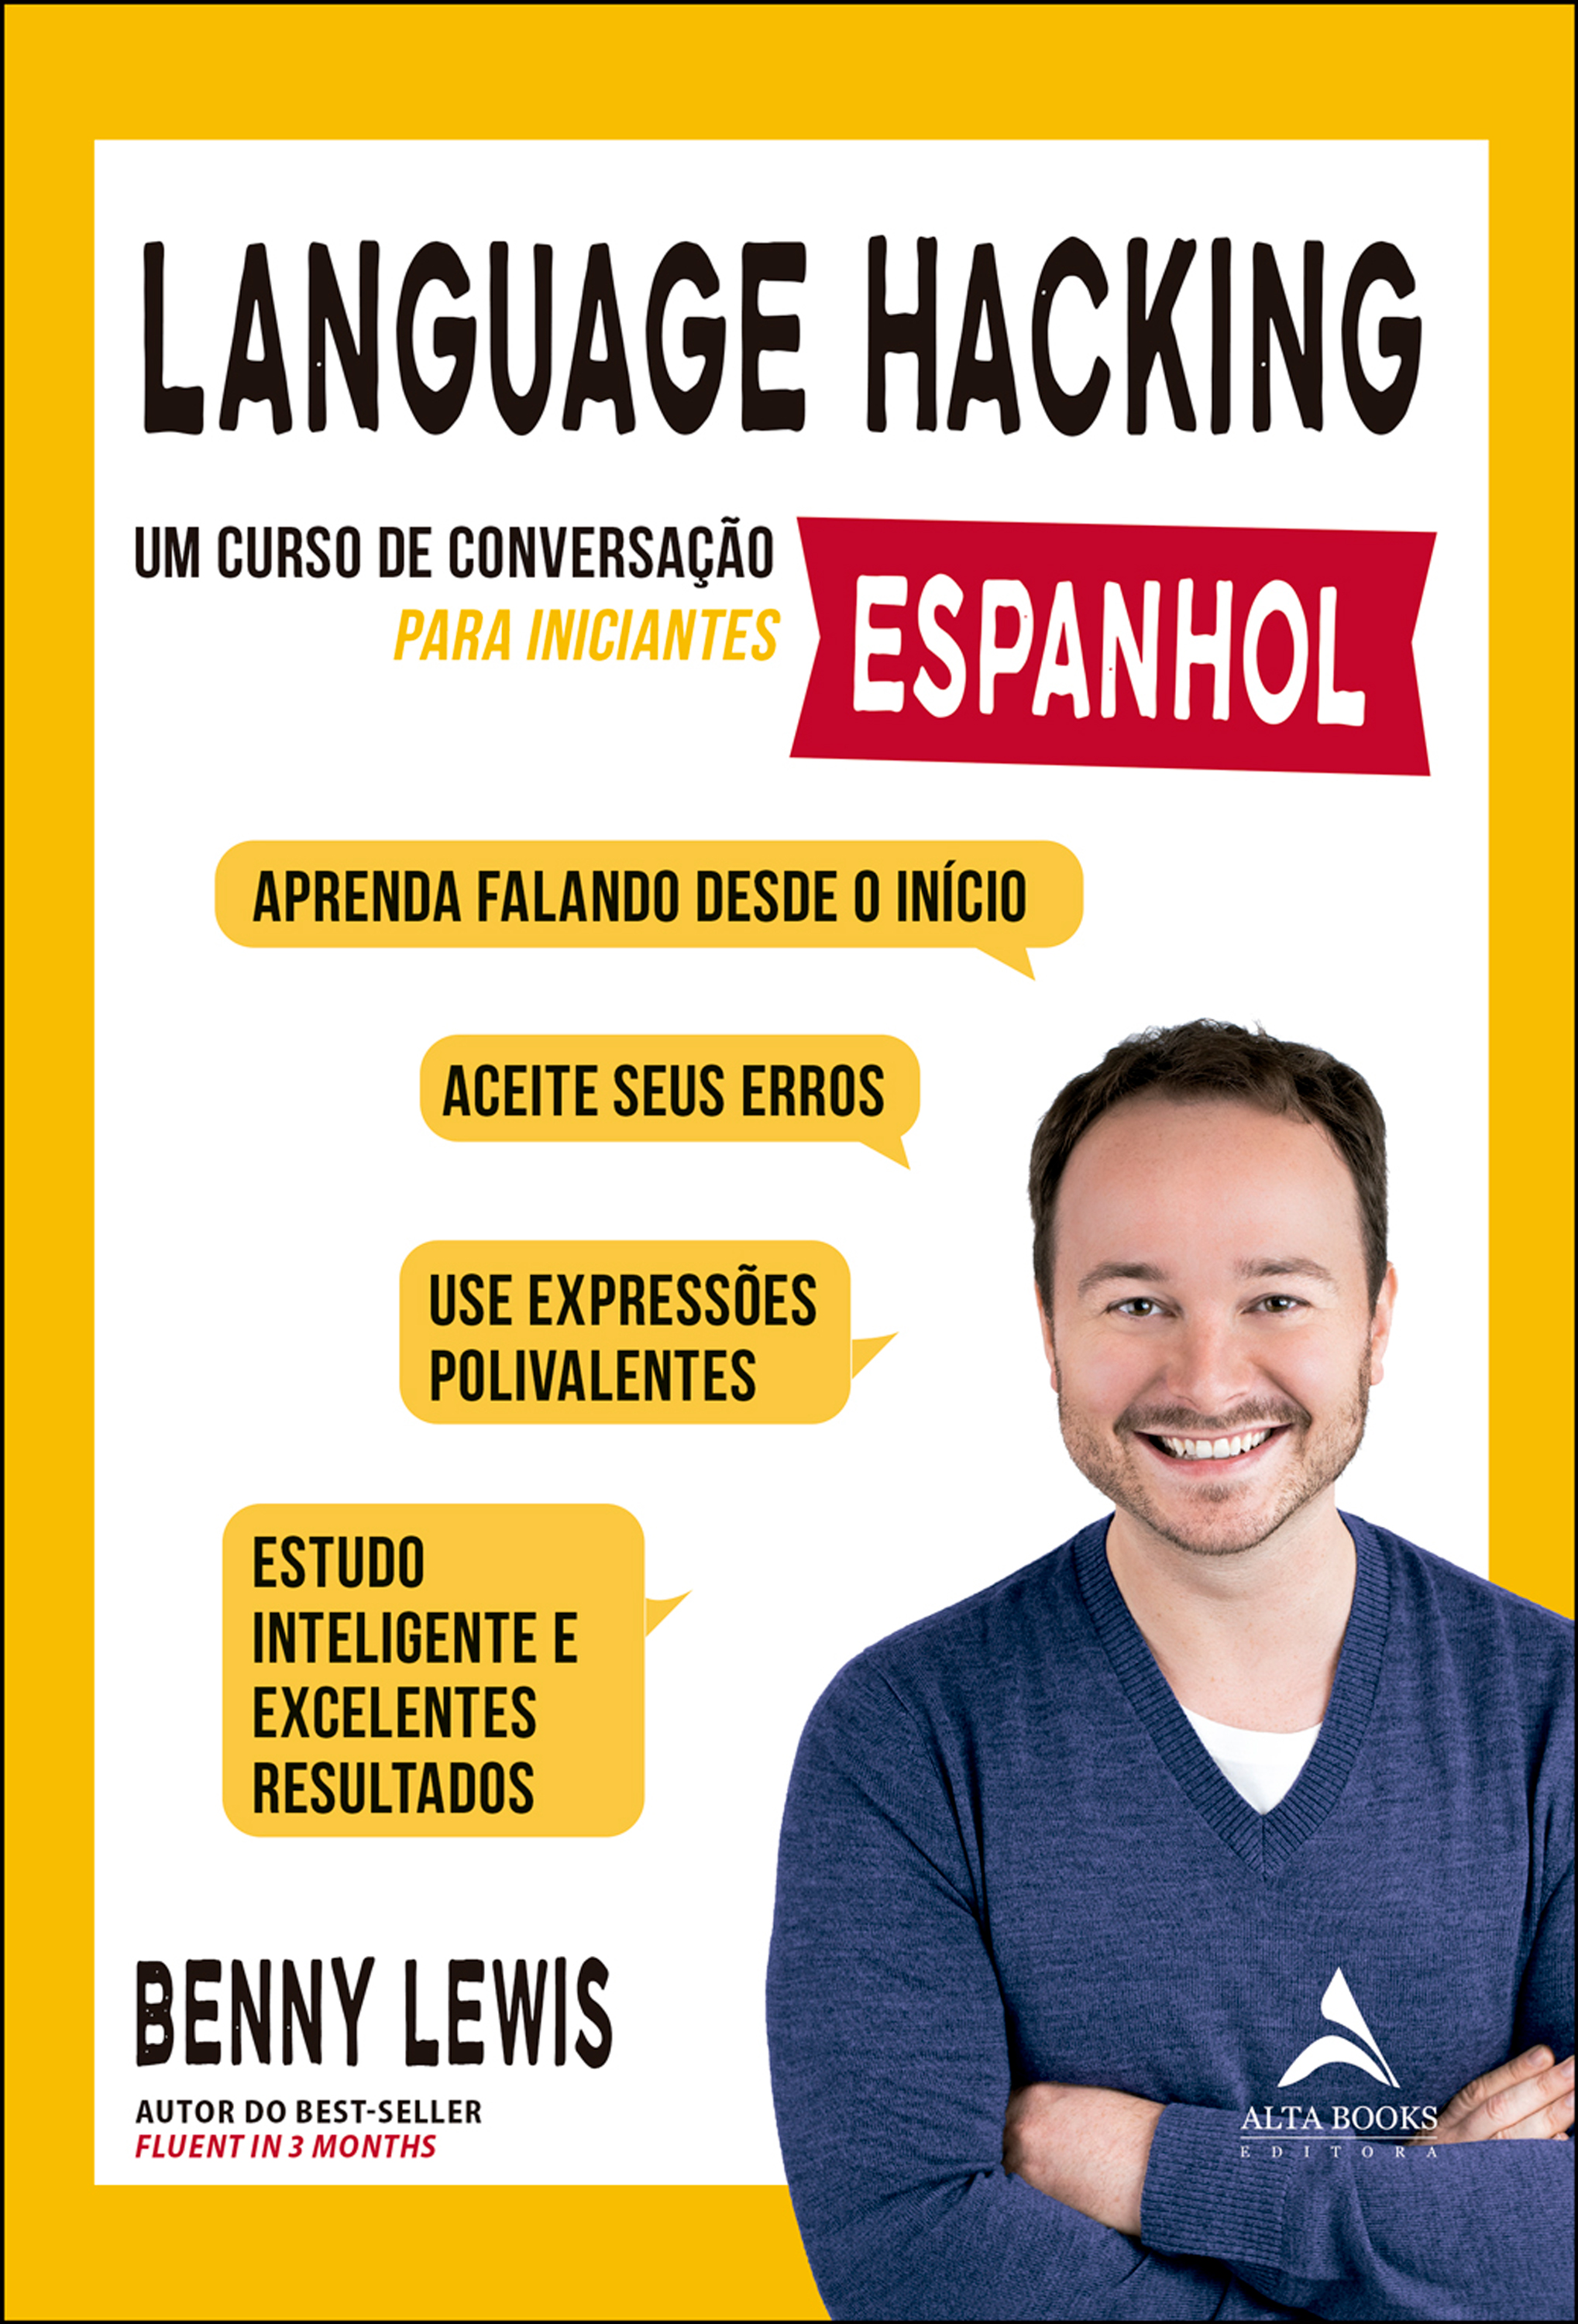 Language hacking - Espanhol